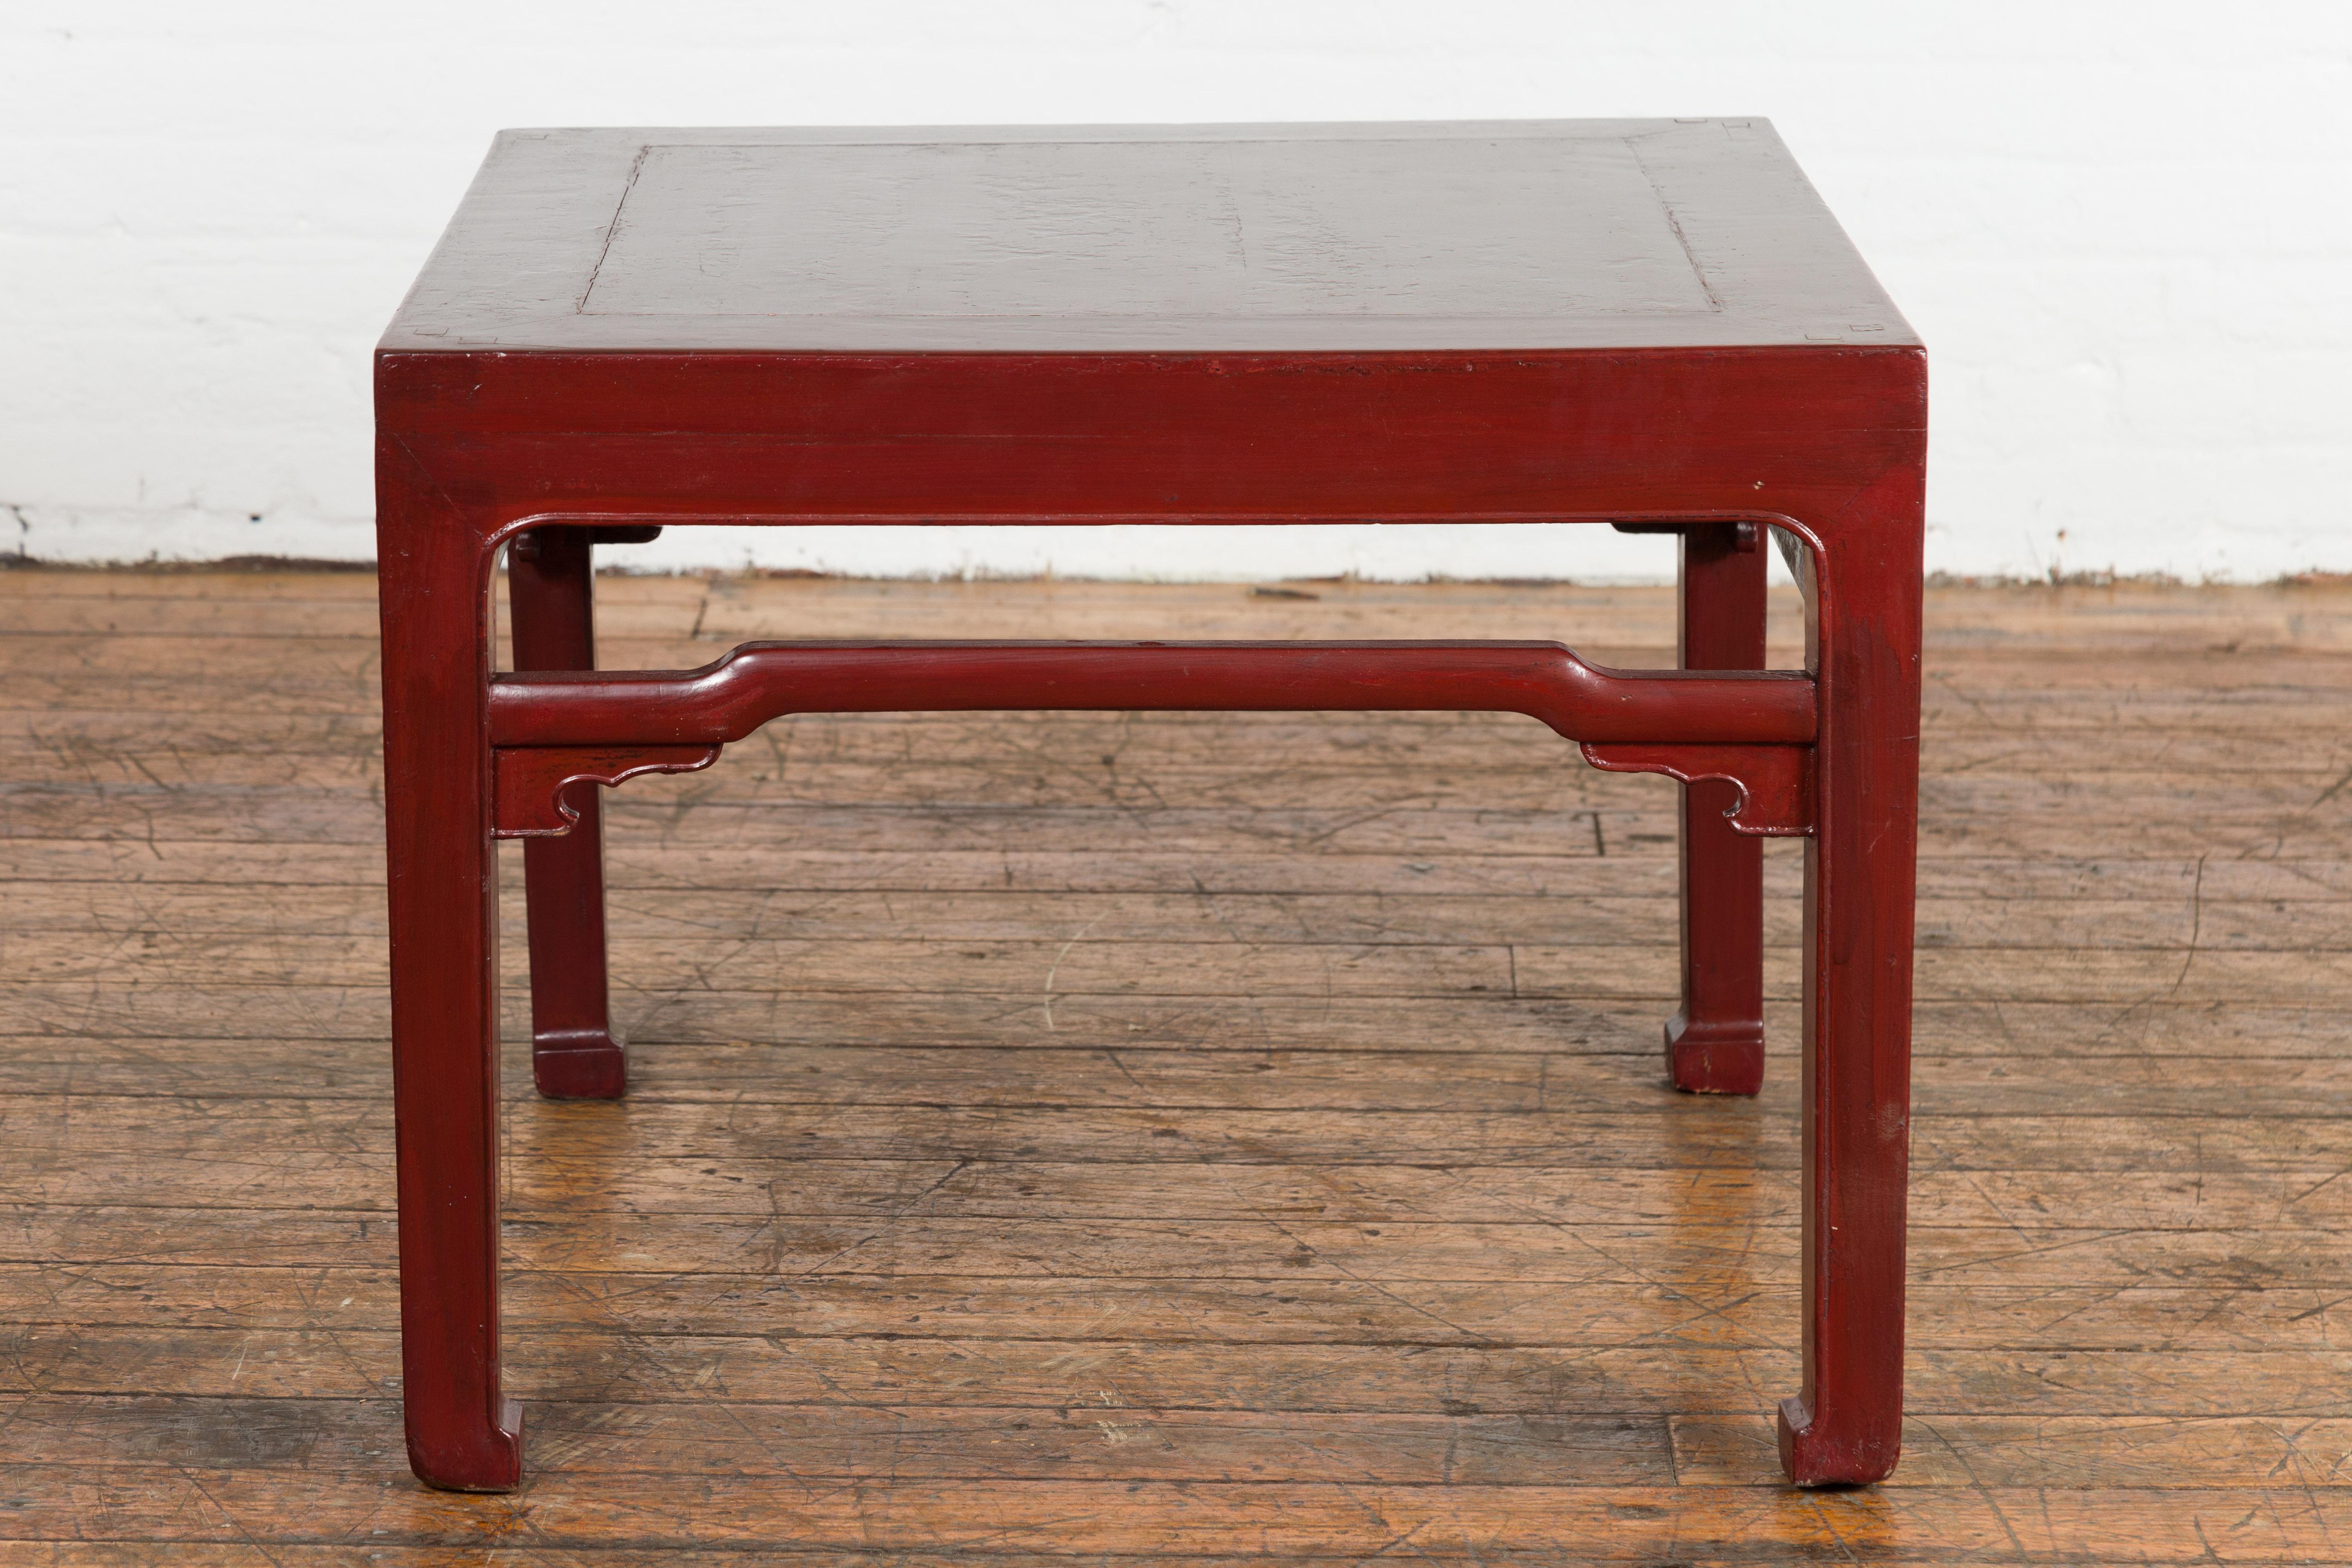 Niedriger chinesischer Tisch aus der späten Qing-Dynastie, Anfang des 20. Jahrhunderts, mit rotem Lack, Pferdehufen an den Enden, Buckeldecken und geschnitzten Zwickeln. Dieser antike niedrige Tisch aus der Qing-Dynastie erstrahlt in einem warmen,